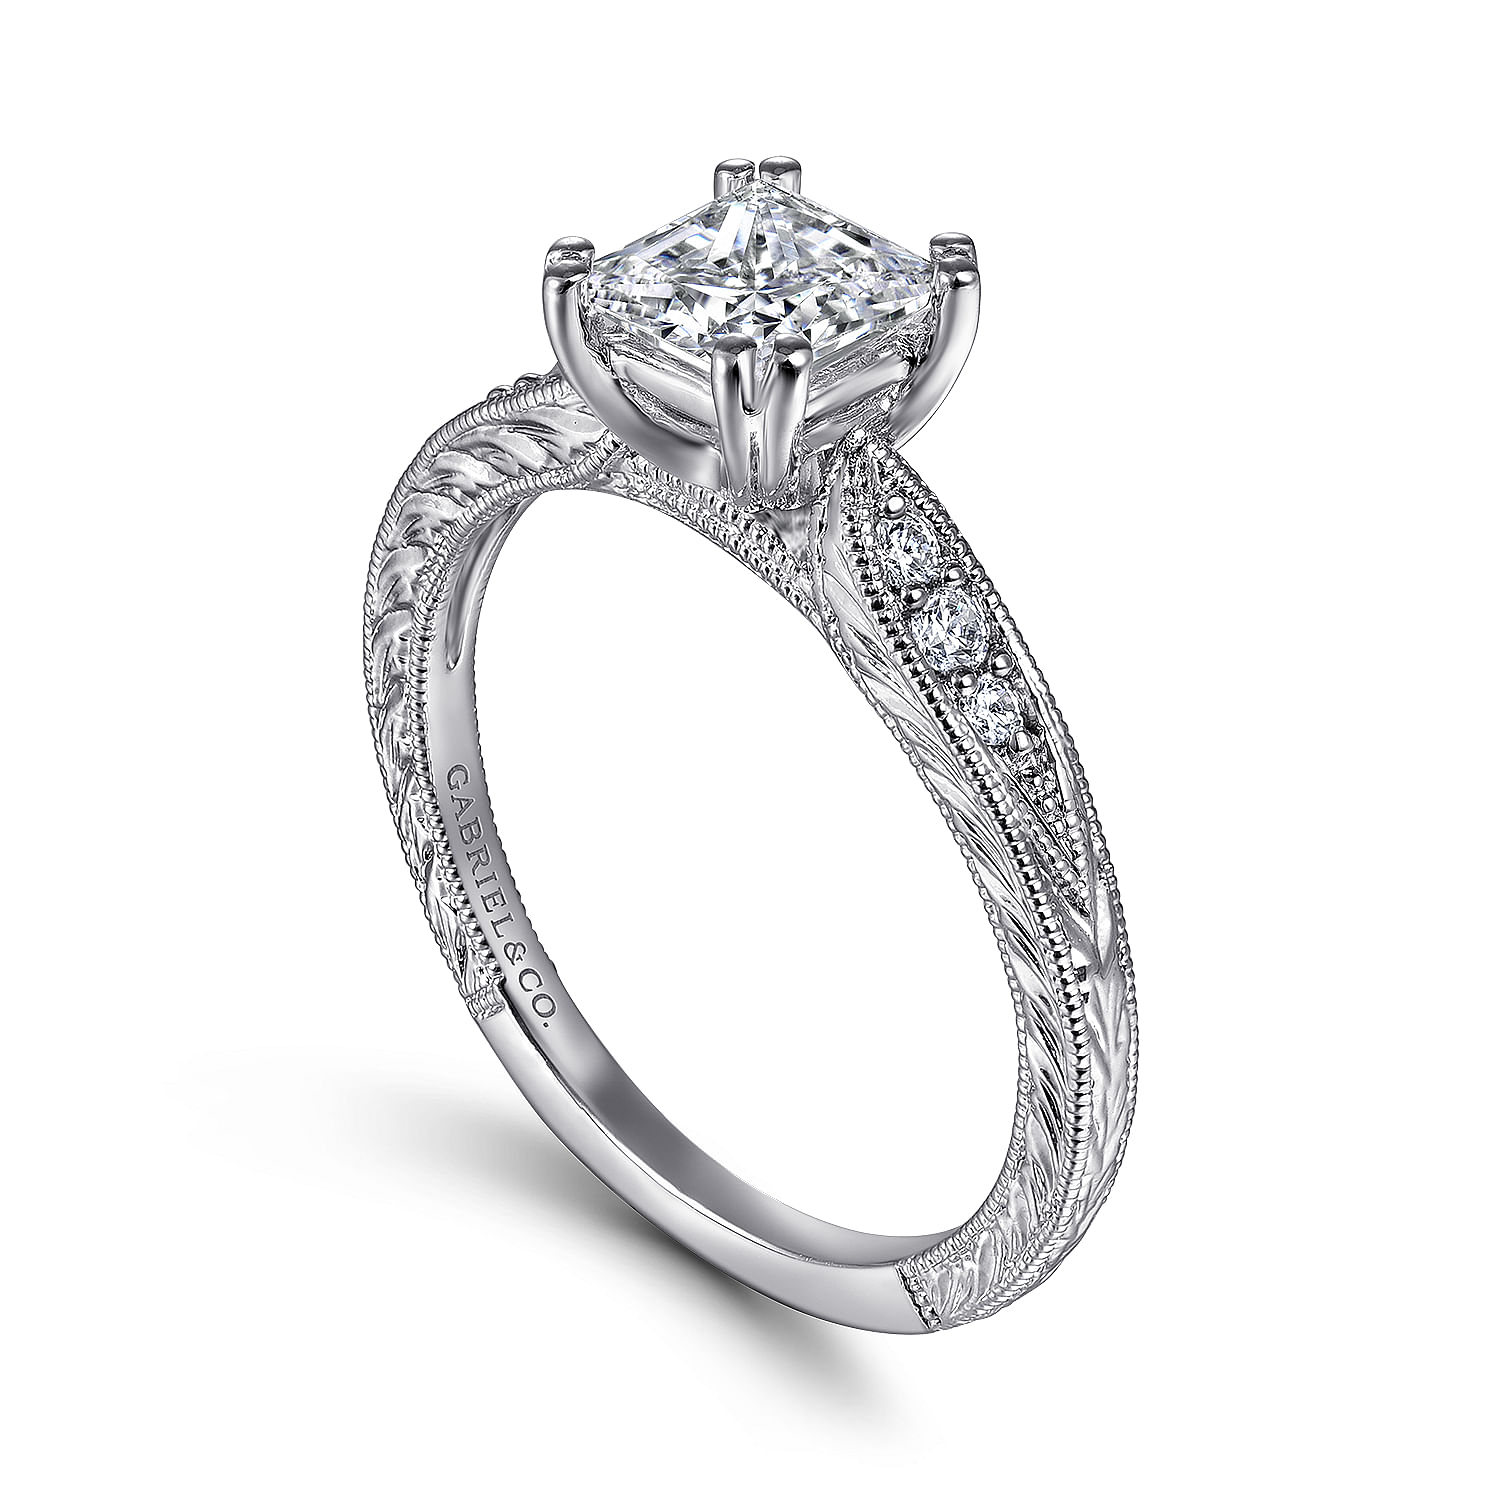 Vintage Inspired 14K White Gold Princess Cut Diamond Engagement Ring -  ER11827S4W44JJ